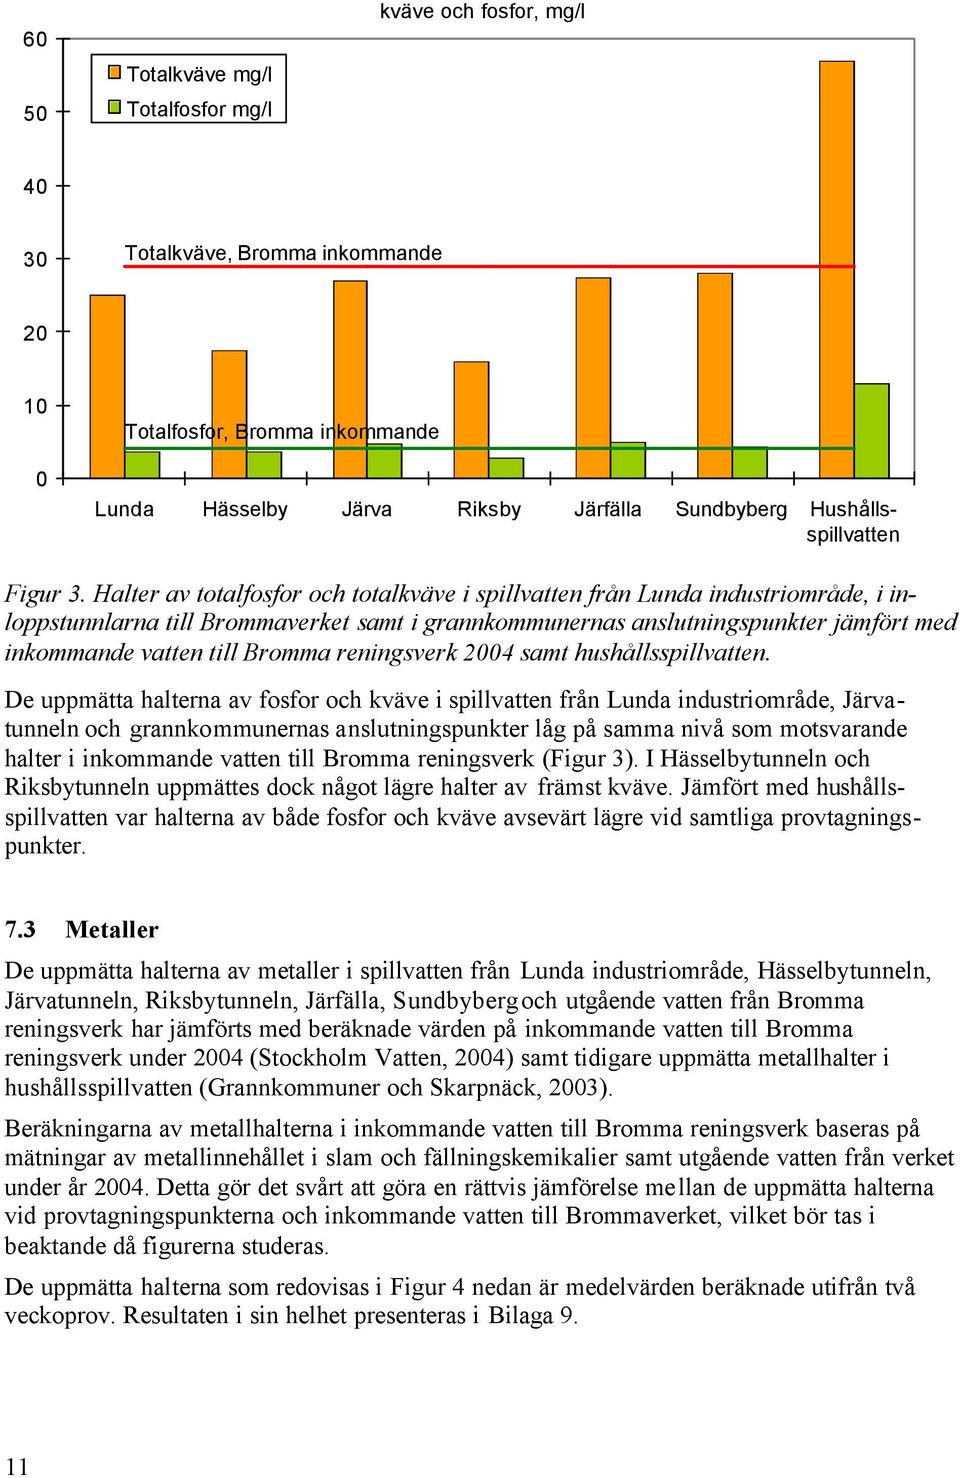 Halter av totalfosfor och totalkväve i spillvatten från Lunda industriområde, i inloppstunnlarna till Brommaverket samt i grannkommunernas anslutningspunkter jämfört med inkommande vatten till Bromma